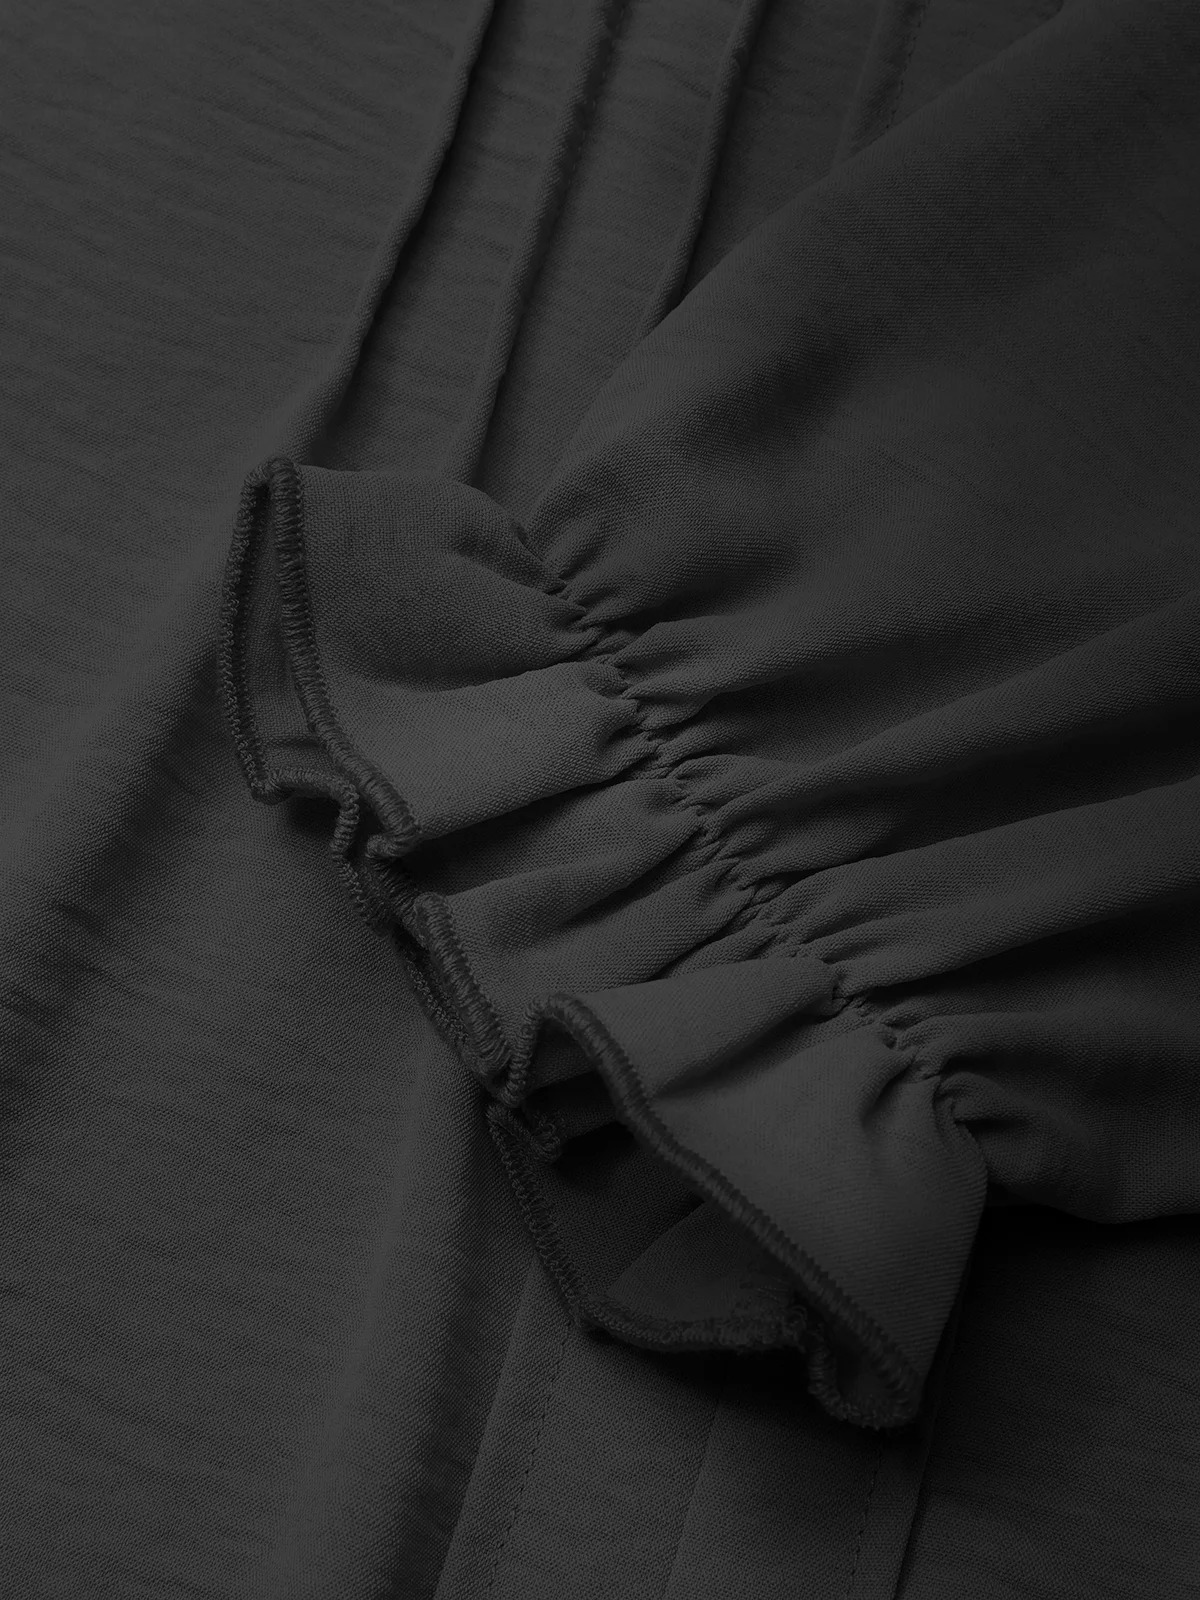 Gekerbt Langarm Unifarben Regelmäßig Weit Bluse für Damen